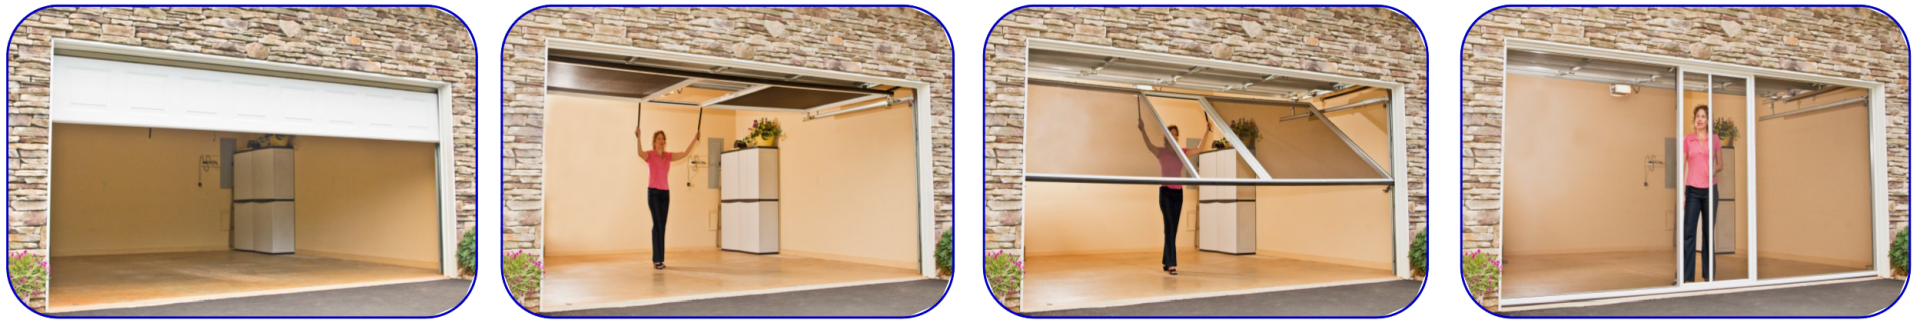 Professional Garage Door Repair